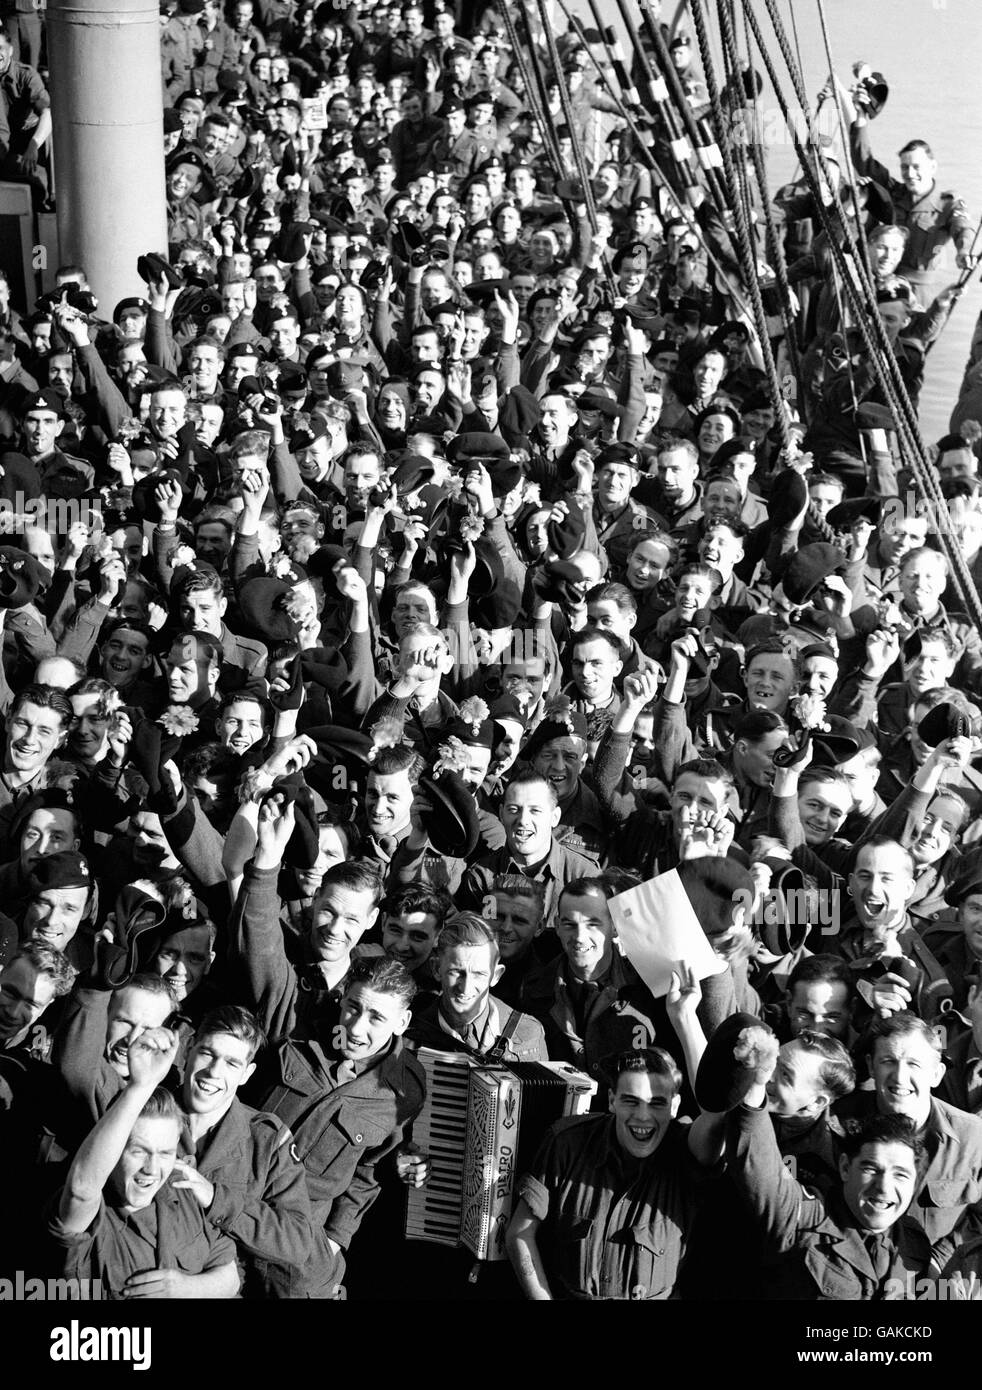 A Cheer They Hey Hope può essere sentito al lontano fronte di battaglia è sollevato da uomini del 1 ° battaglione Royal Northumberland Fusiliers a bordo della troopship RMS Empire Halladale a Southampton mentre stavano per navigare per la corea. Foto Stock